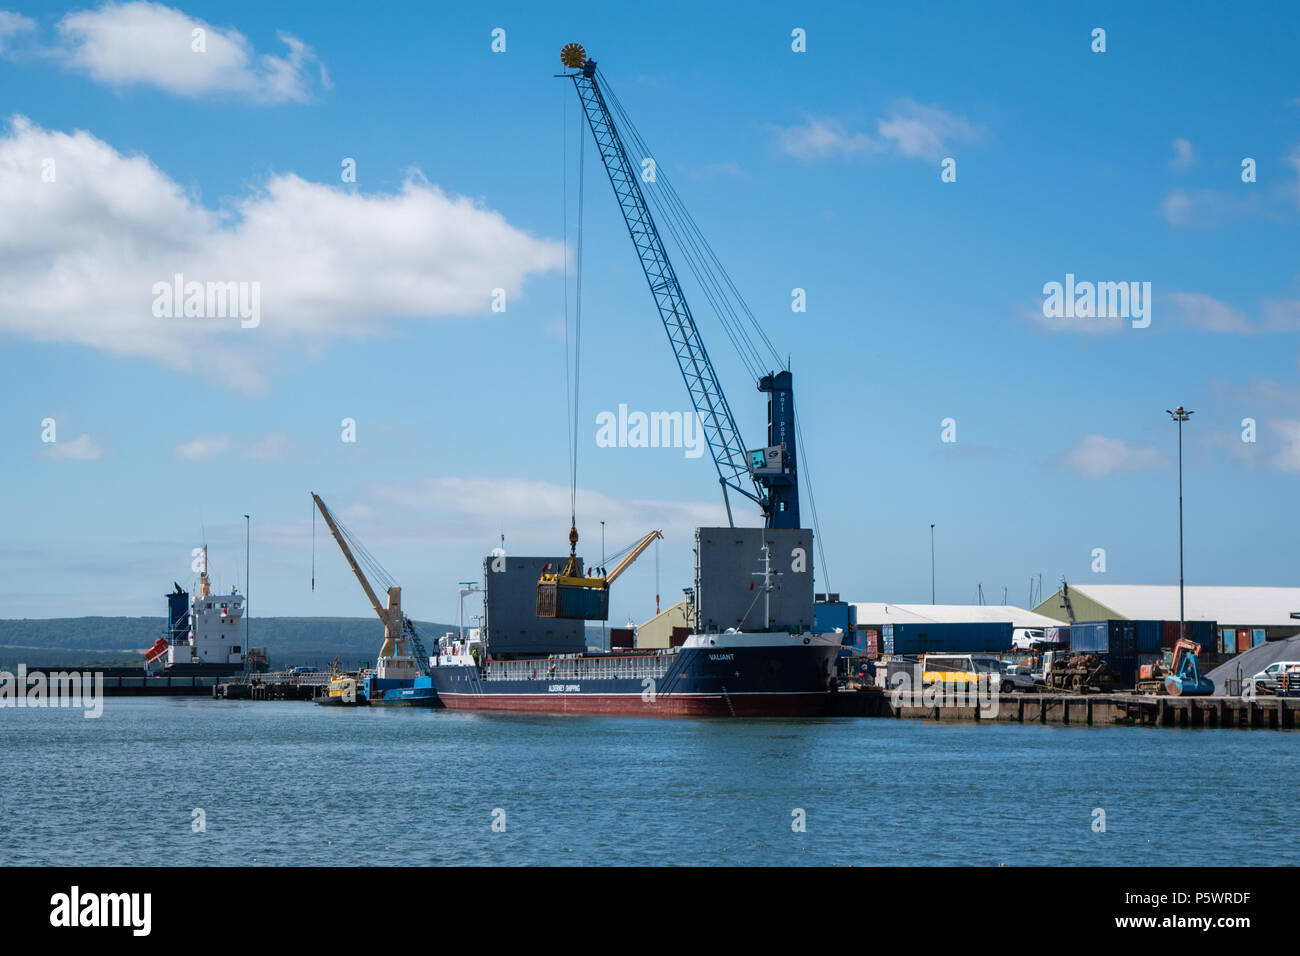 Le vaillant - Aurigny Shipping Company - Canal de navigation du navire de la lignée d'être chargé de conteneurs d'expédition sous le soleil d'été en juin 2018. Banque D'Images